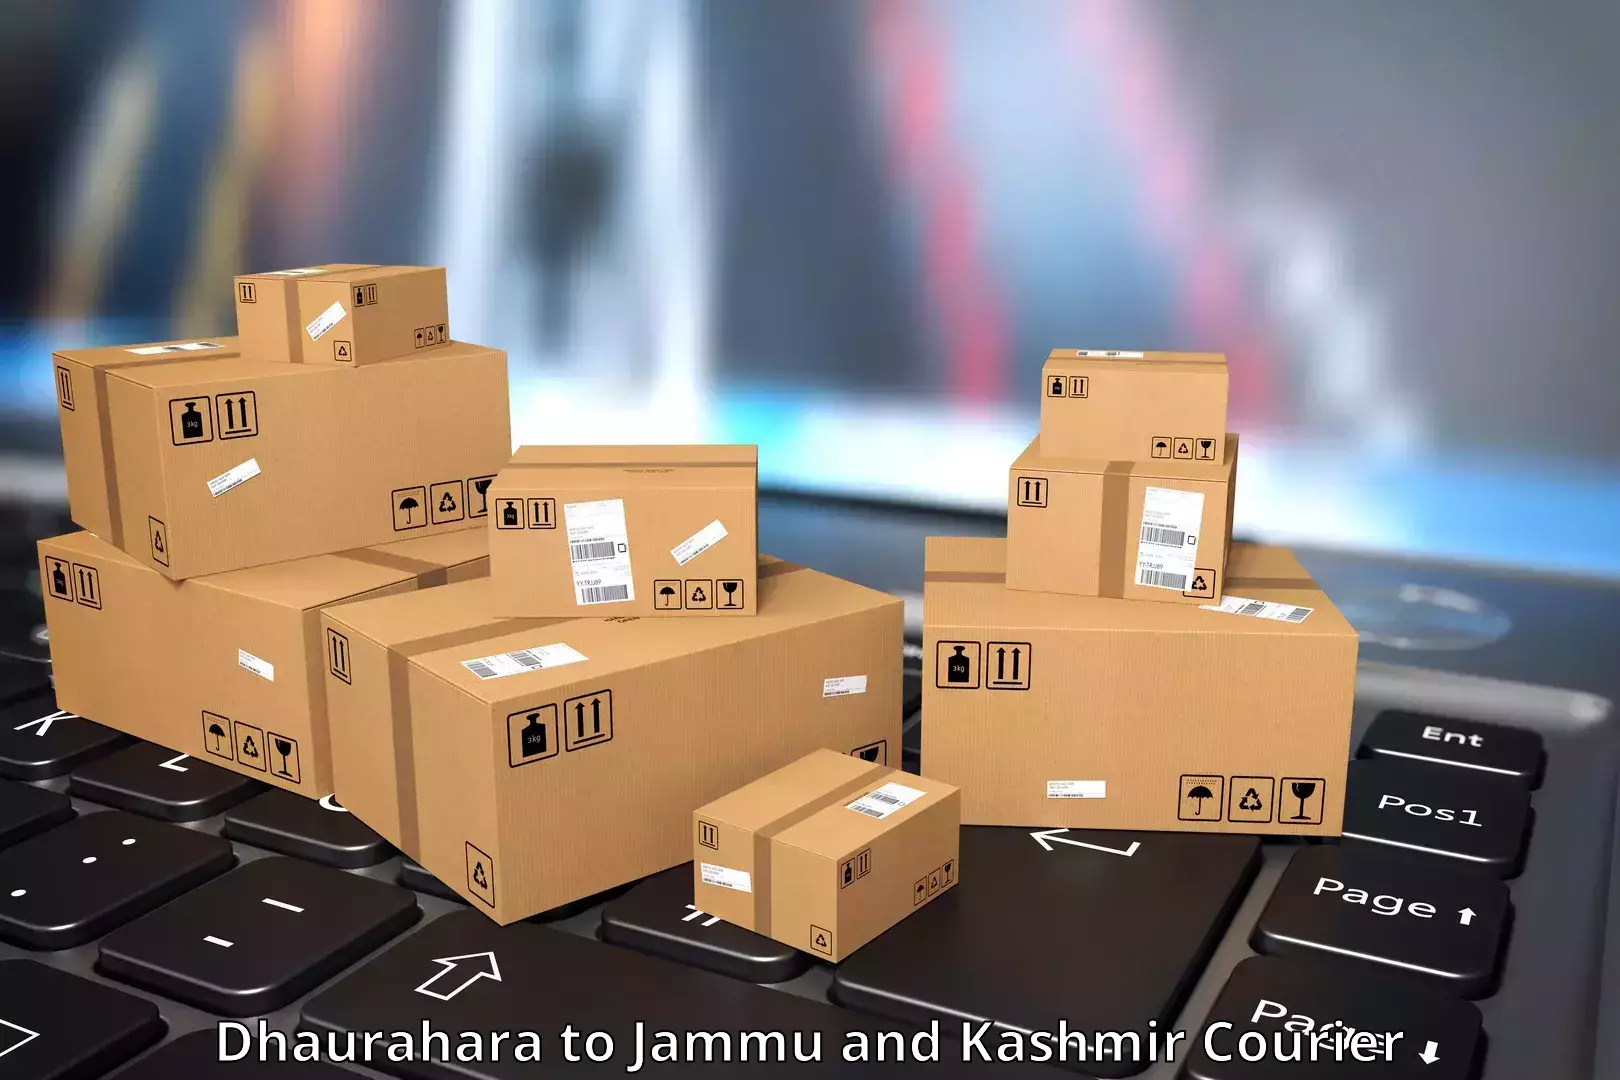 Professional courier services Dhaurahara to Srinagar Kashmir